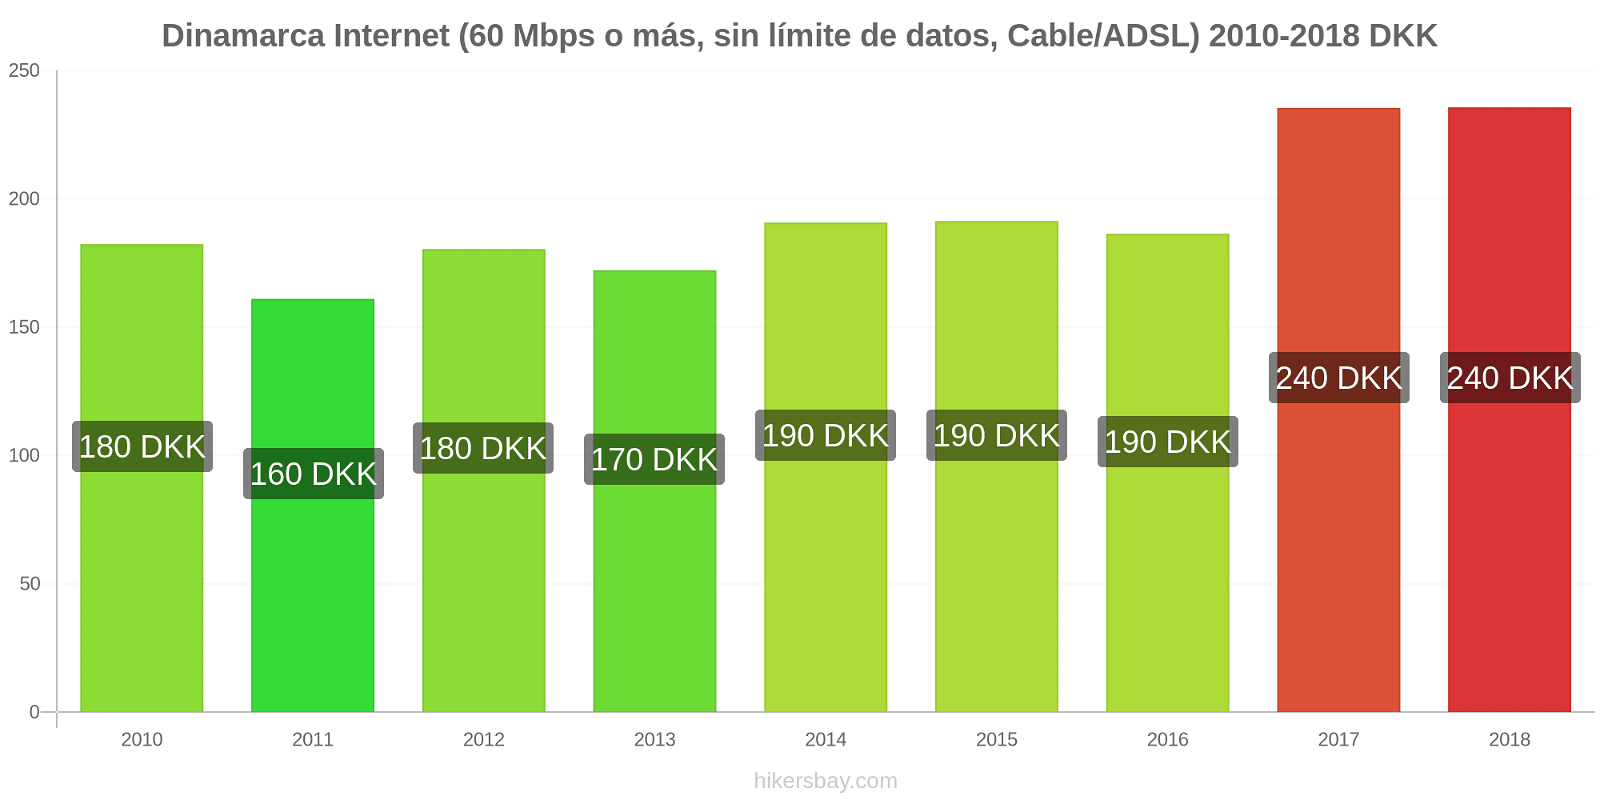 Dinamarca cambios de precios Internet (60 Mbps o más, datos ilimitados, cable/ADSL) hikersbay.com